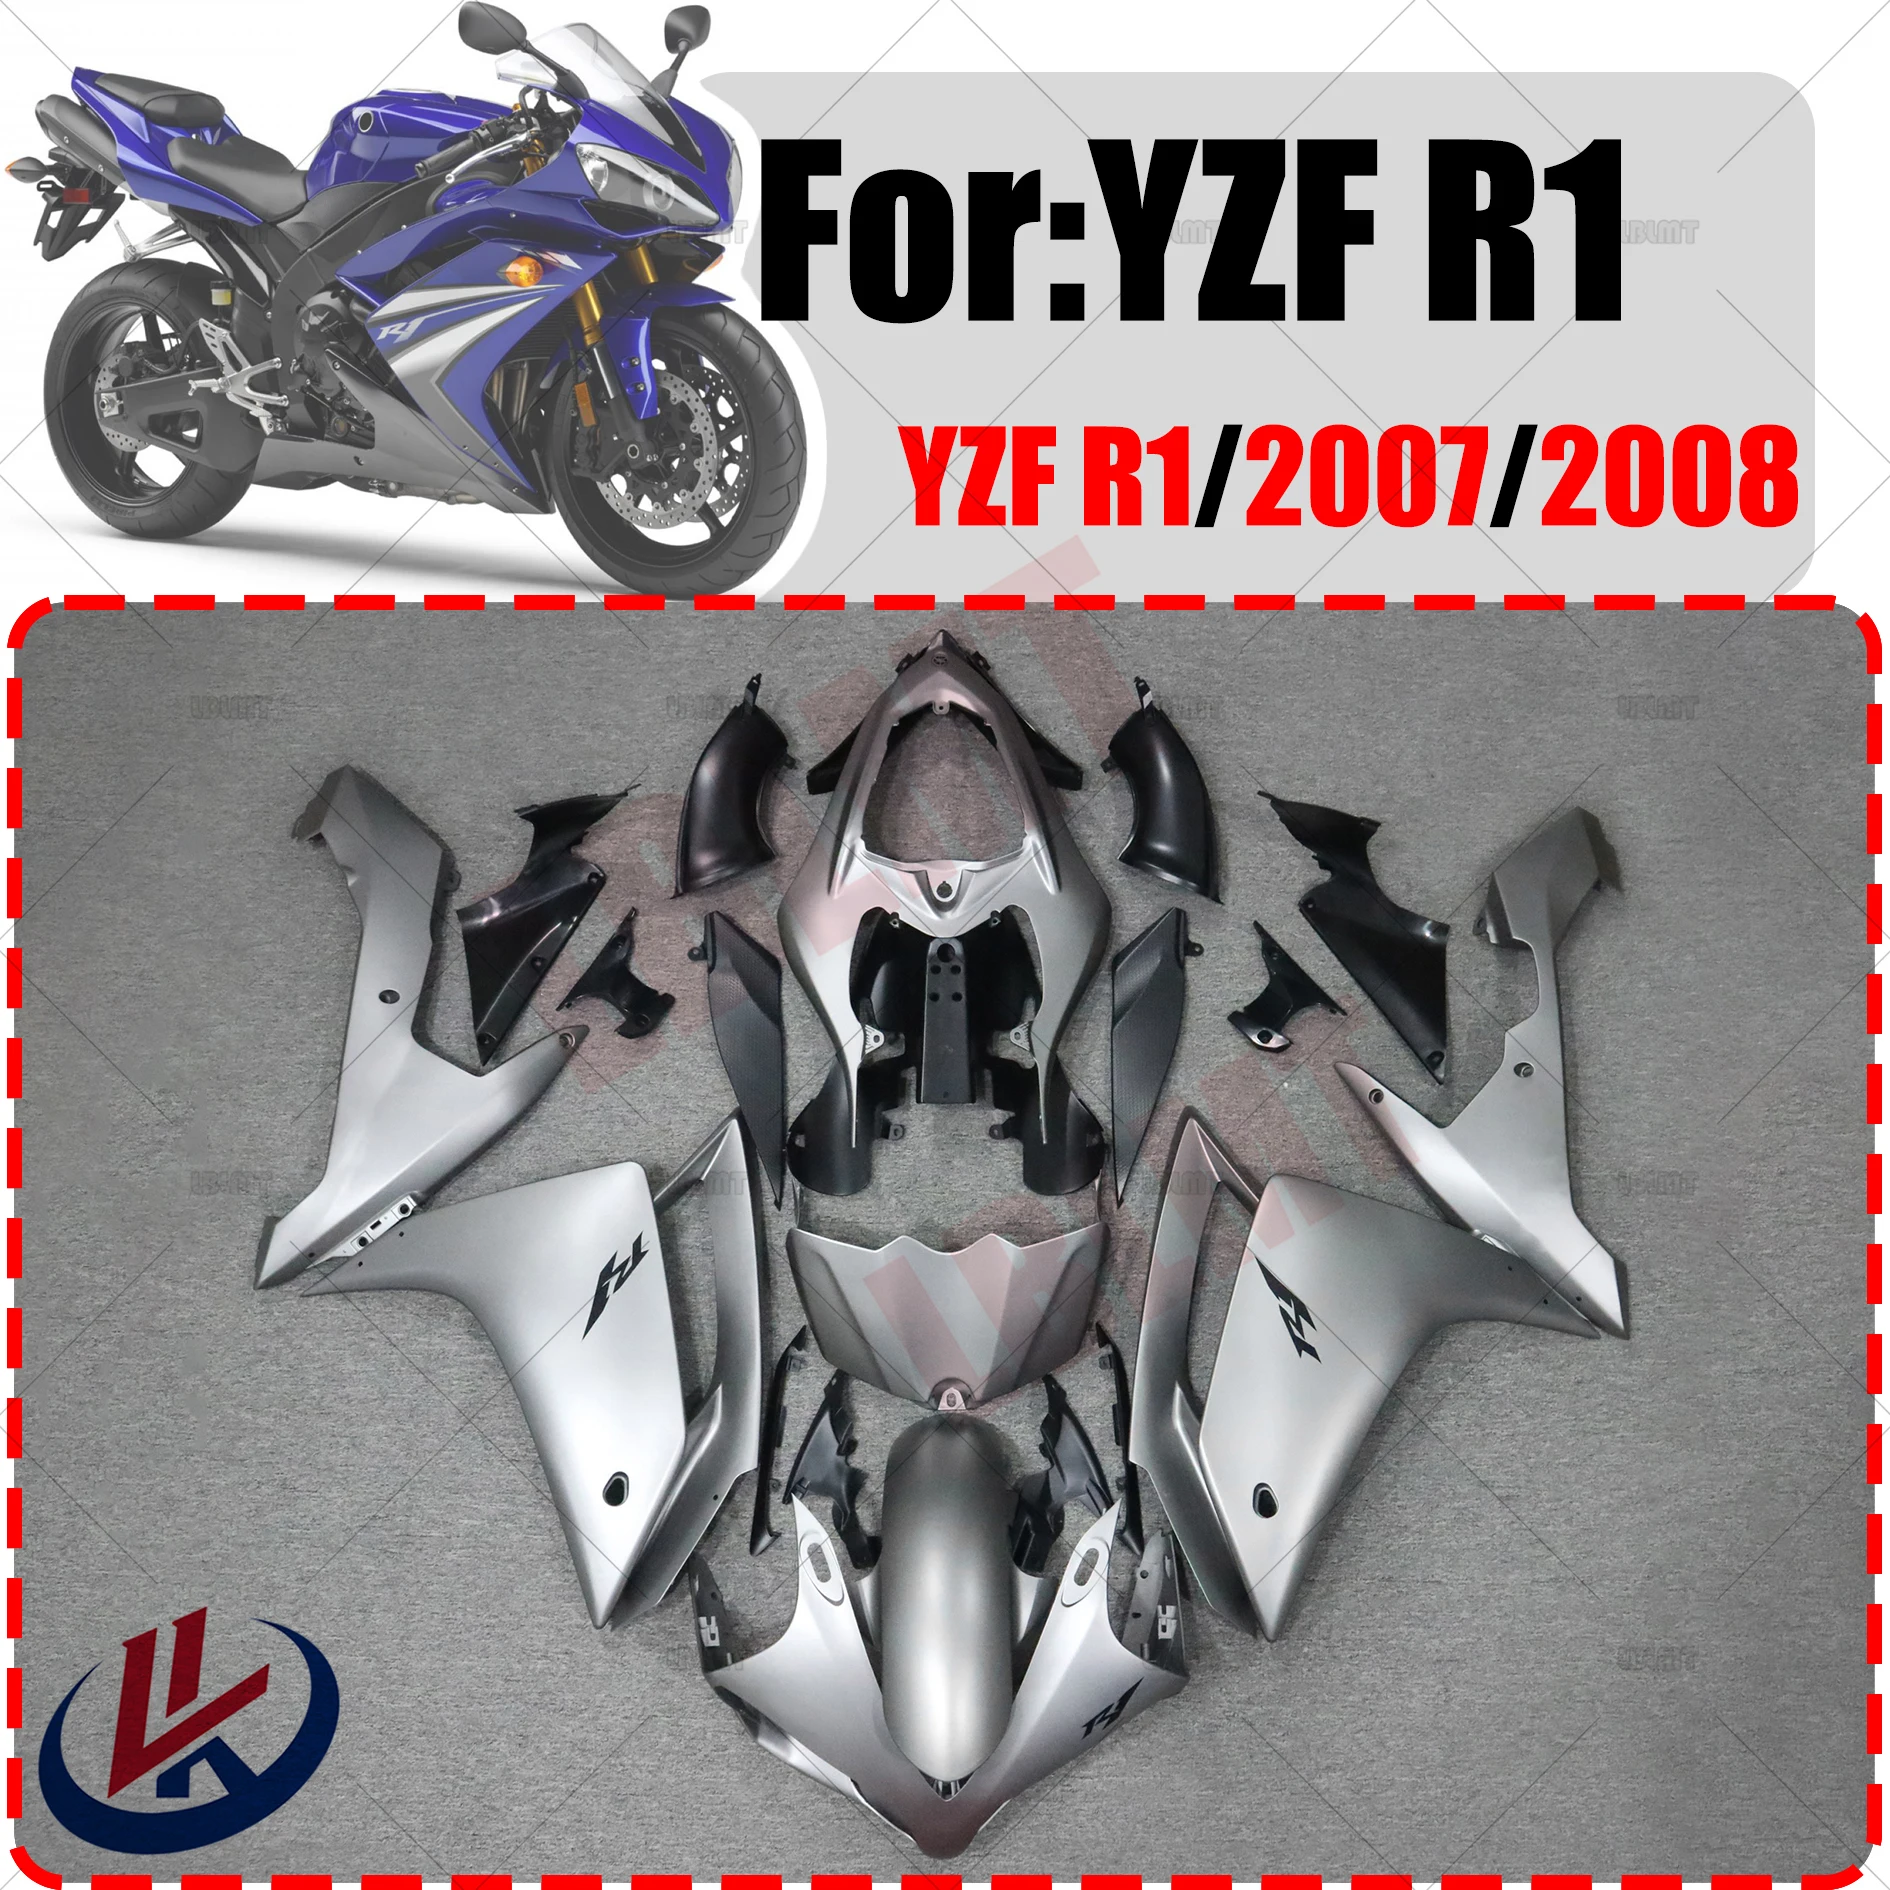 

Обтекатель для мотоцикла, комплект обтекателей для кузова для YAMAHA YZF R1 YZFR1 2007 2008, обтекатель для кузова из АБС-пластика для мотоцикла